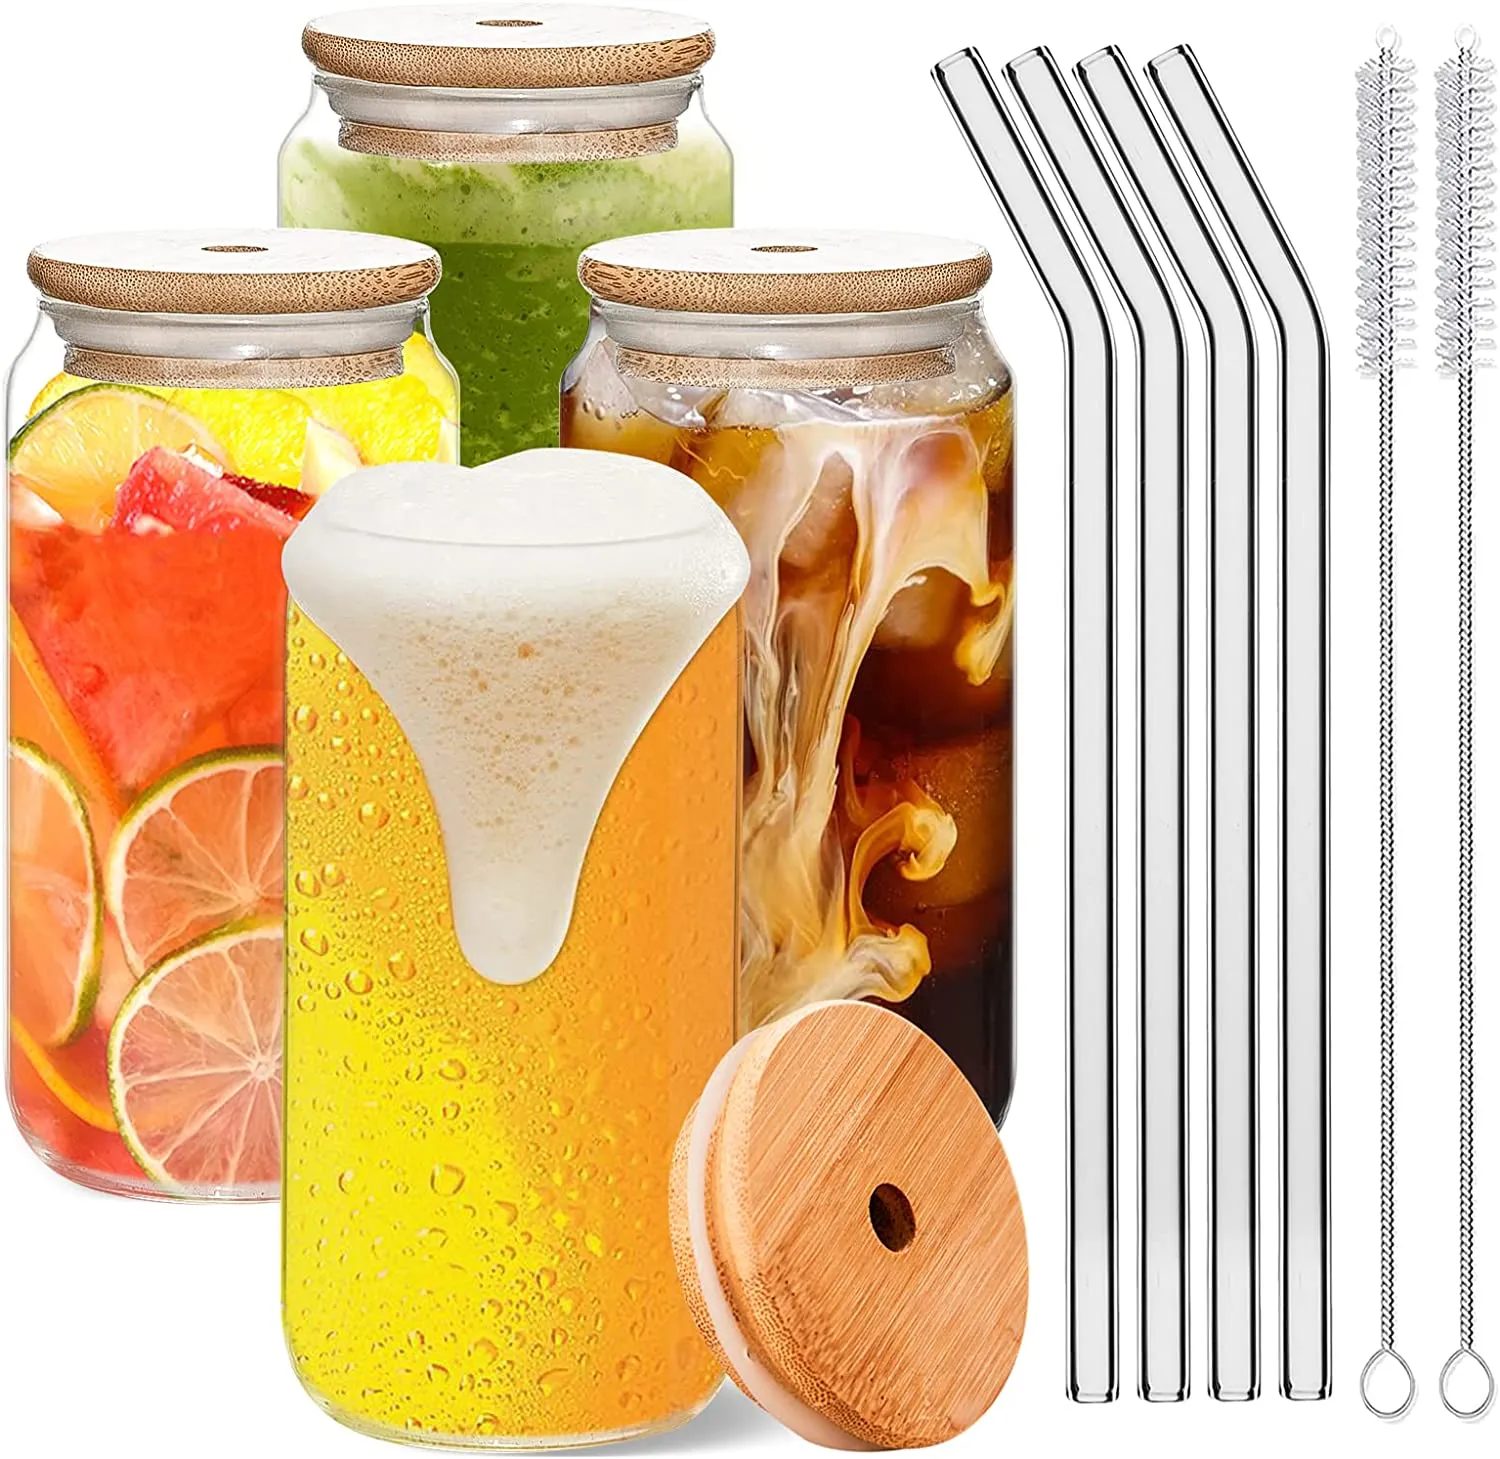 Tasse en verre réutilisable, paille, Coke, eau, jus, bière, lait, café, verres, accessoires de cuisine